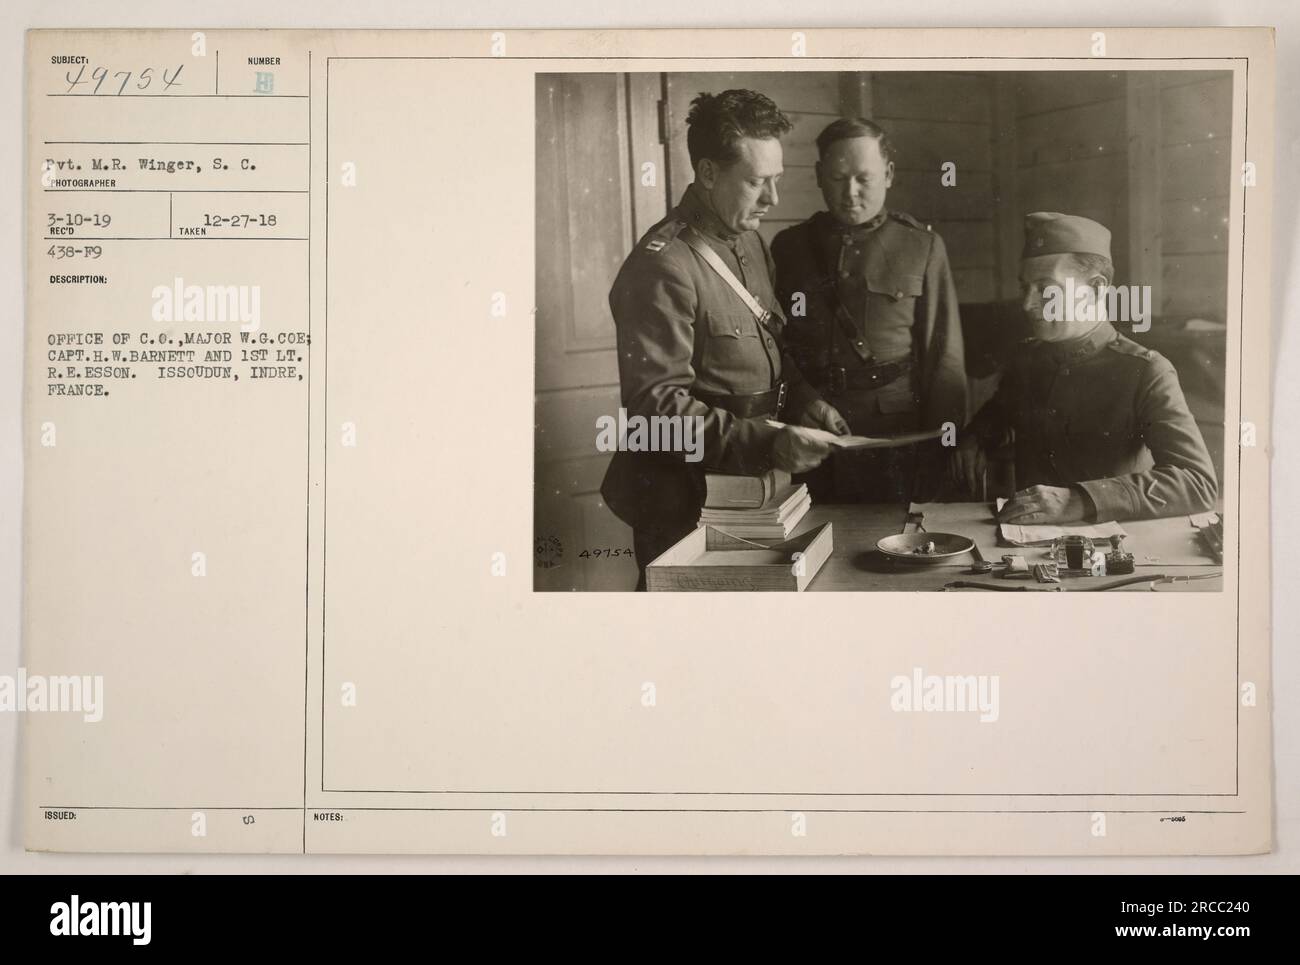 Ufficio del C.O. Maggiore W.G. CoE, Capt. H.W. Barnett, e il primo tenente R.E. Esson a Issoudun, Indre, Francia. La fotografia mostra Pvt. M.R. Winger del Signal Corps. Scattata il 10 marzo 1919, la fotografia è stata rilasciata il 27 dicembre 1918. L'immagine reca le note "49754 KARN". Foto Stock